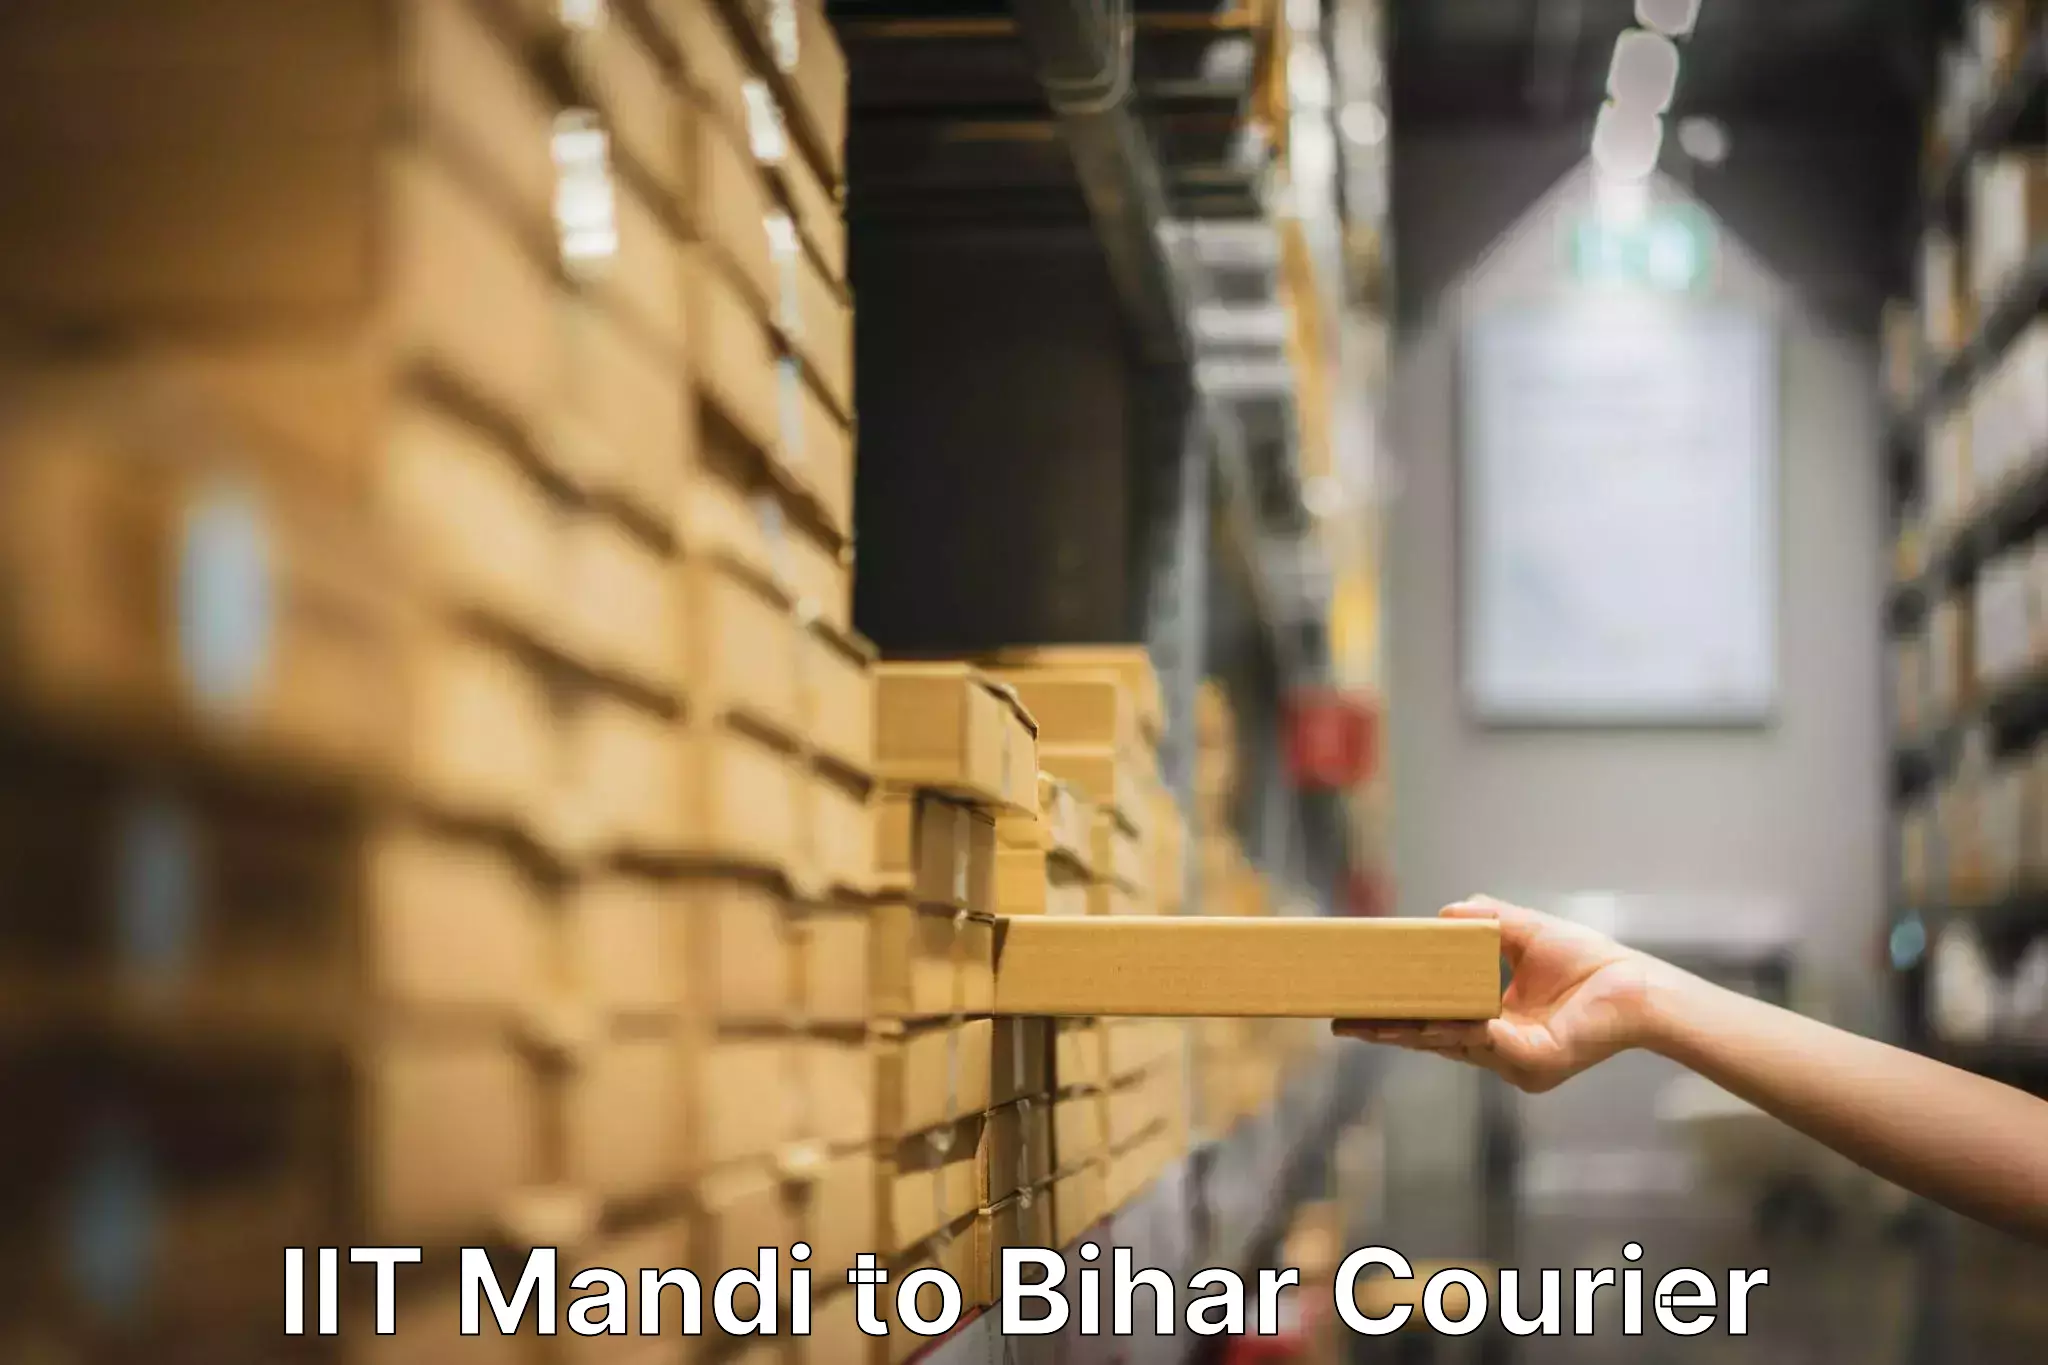 Furniture transport company IIT Mandi to Manjhaul